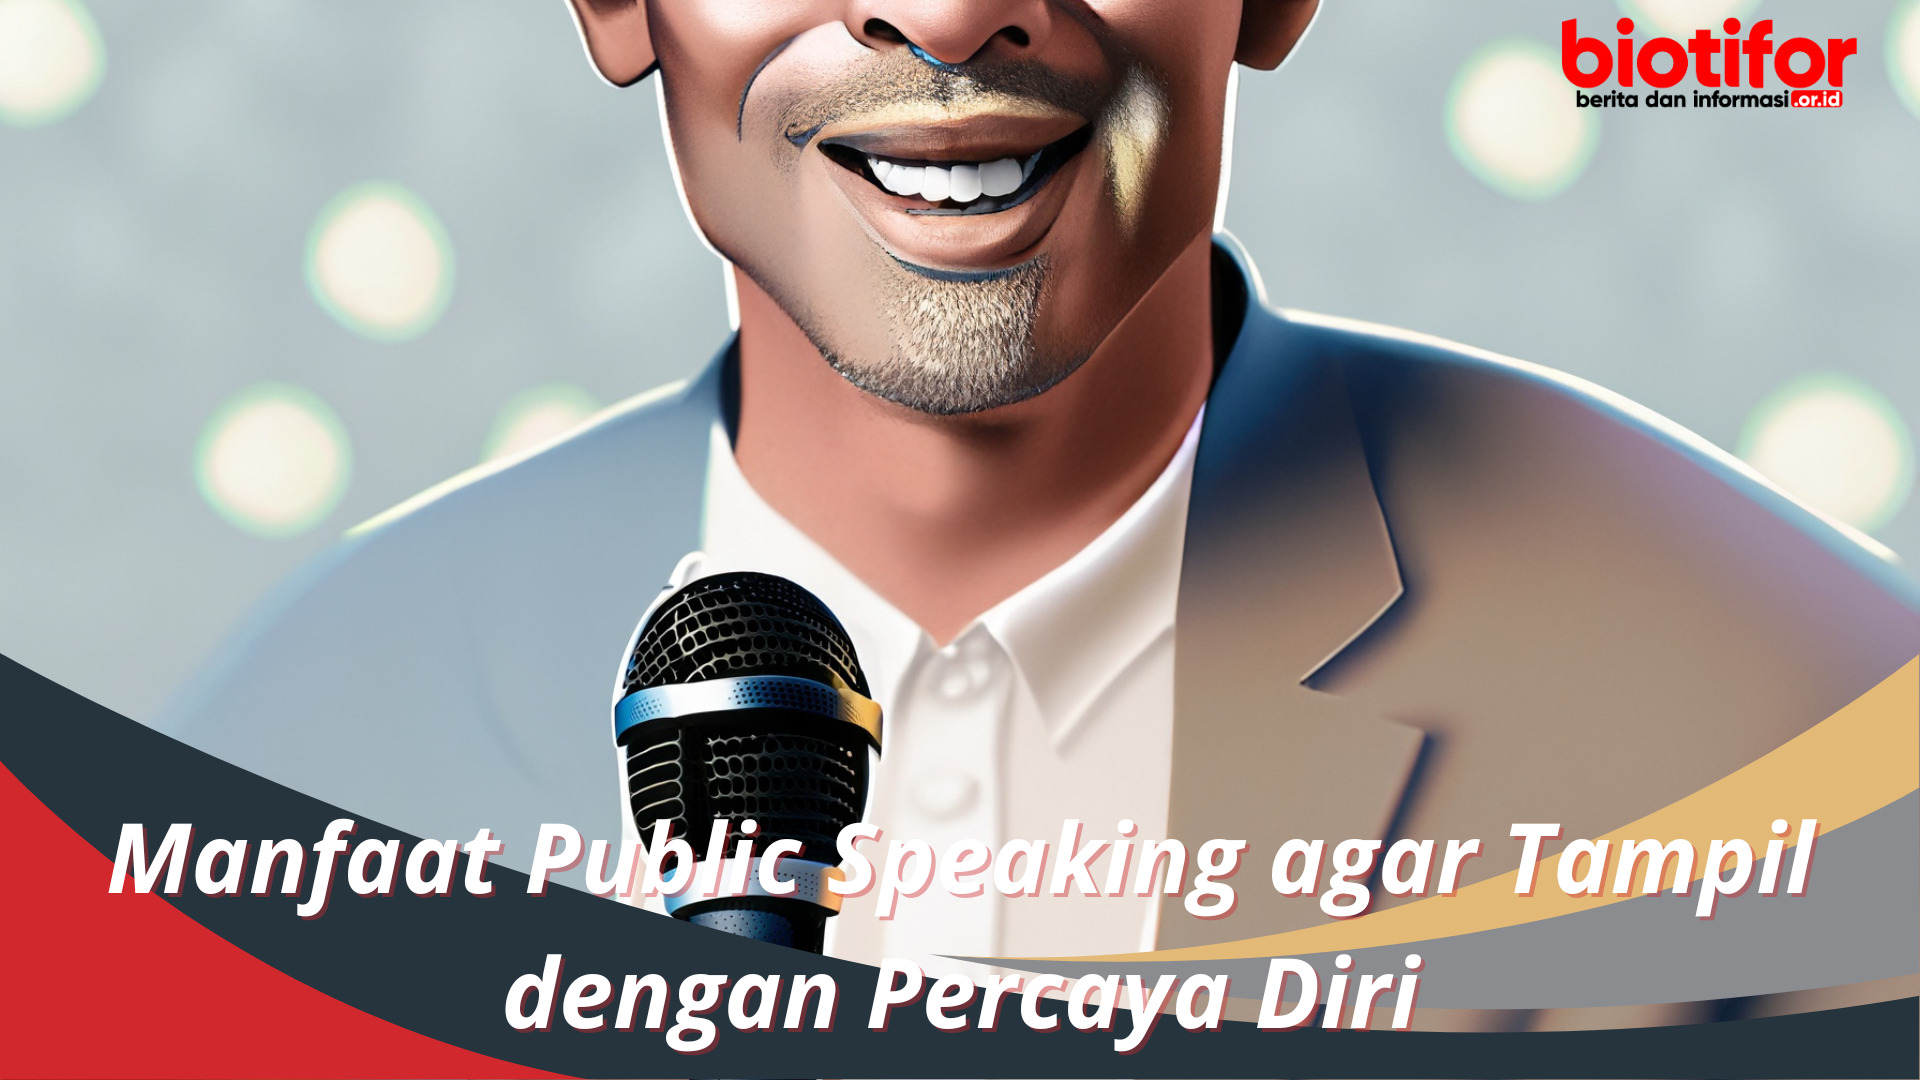 Manfaat Public Speaking agar Tampil dengan Percaya Diri